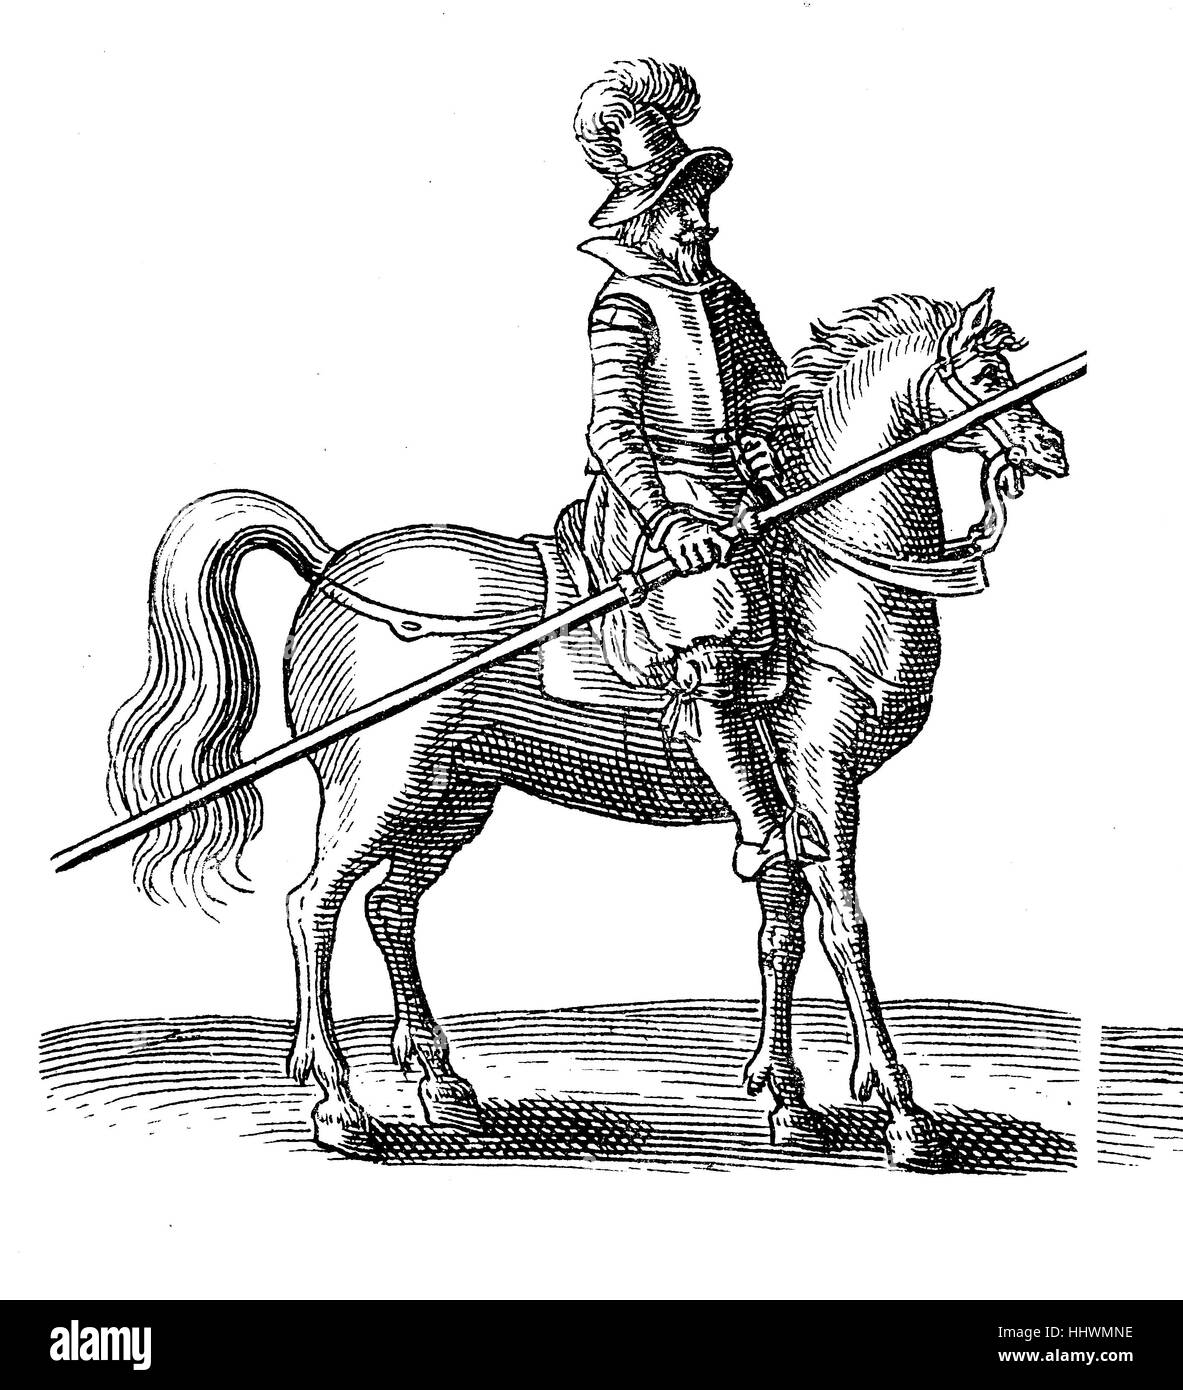 Lance Fahrer des Dreißigjährigen Krieges, mit Rüstung und Pferd, Geschichtsbild oder Illustration, veröffentlicht 1890, digital verbessert Stockfoto